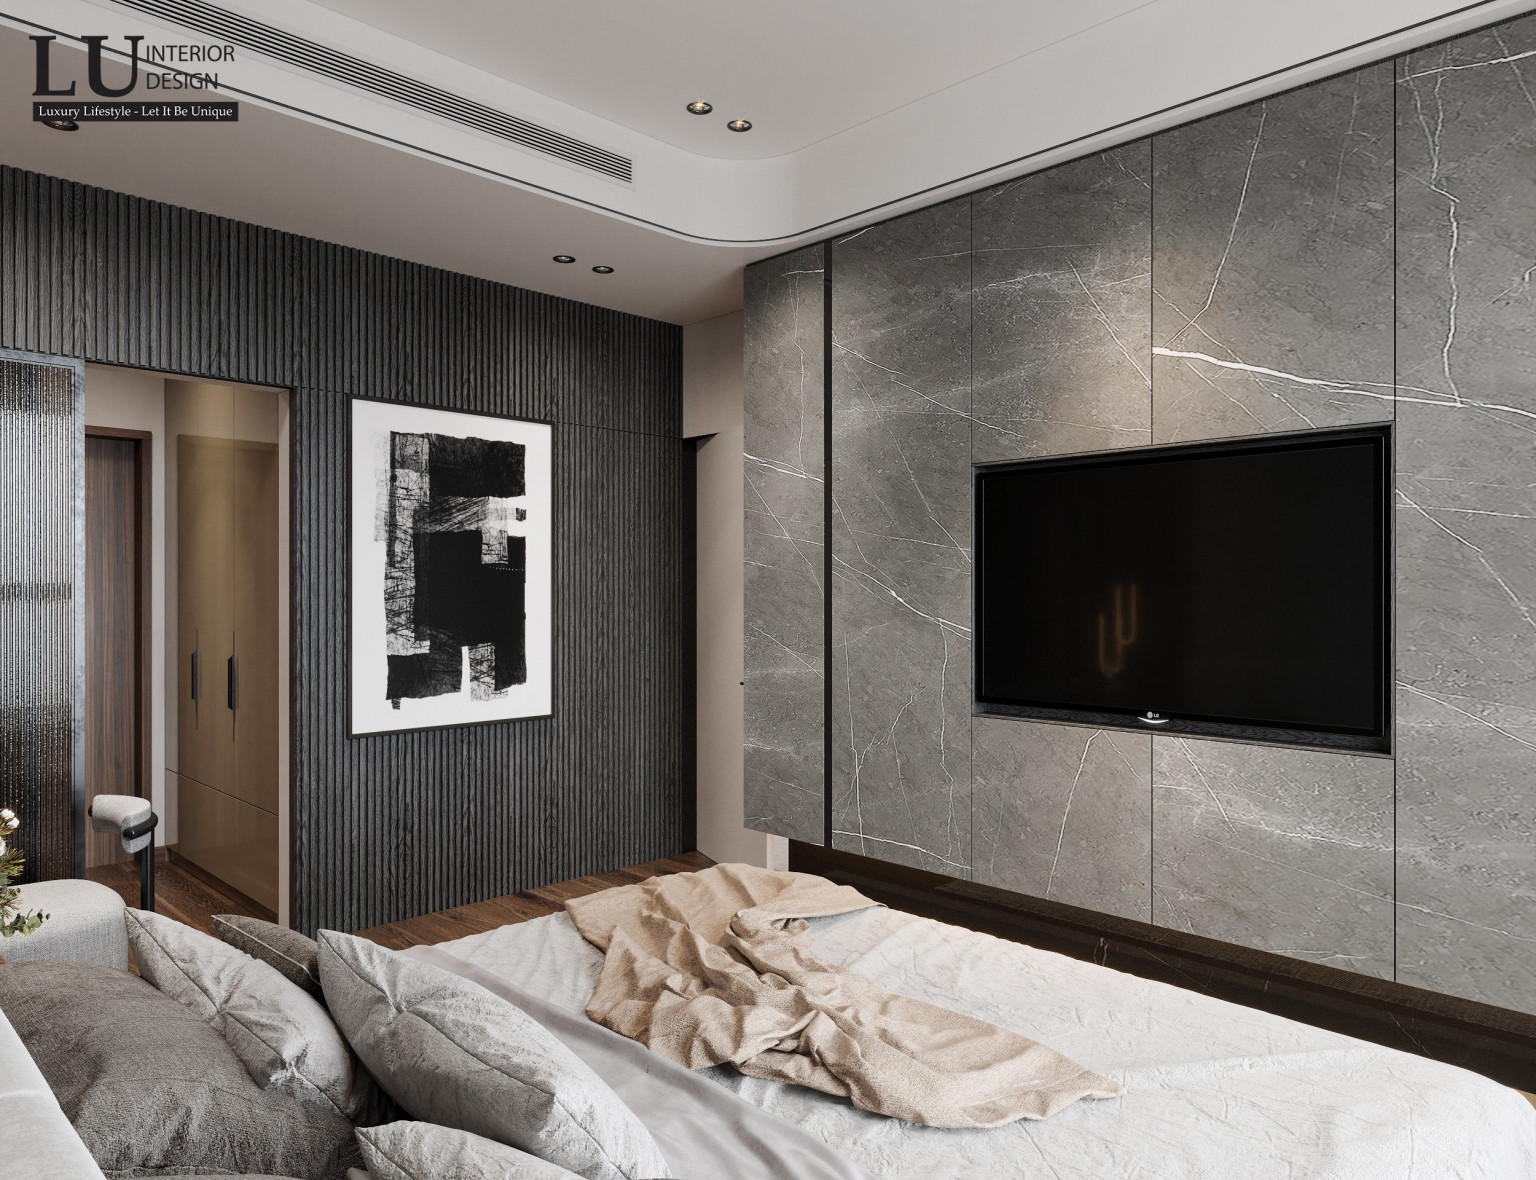 Thiết kế phòng ngủ tối giản nhưng vẫn đảm bảo đầy đủ tiện nghi và sang trọng | Dự án căn hộ The Marq - LU Design thực hiện.